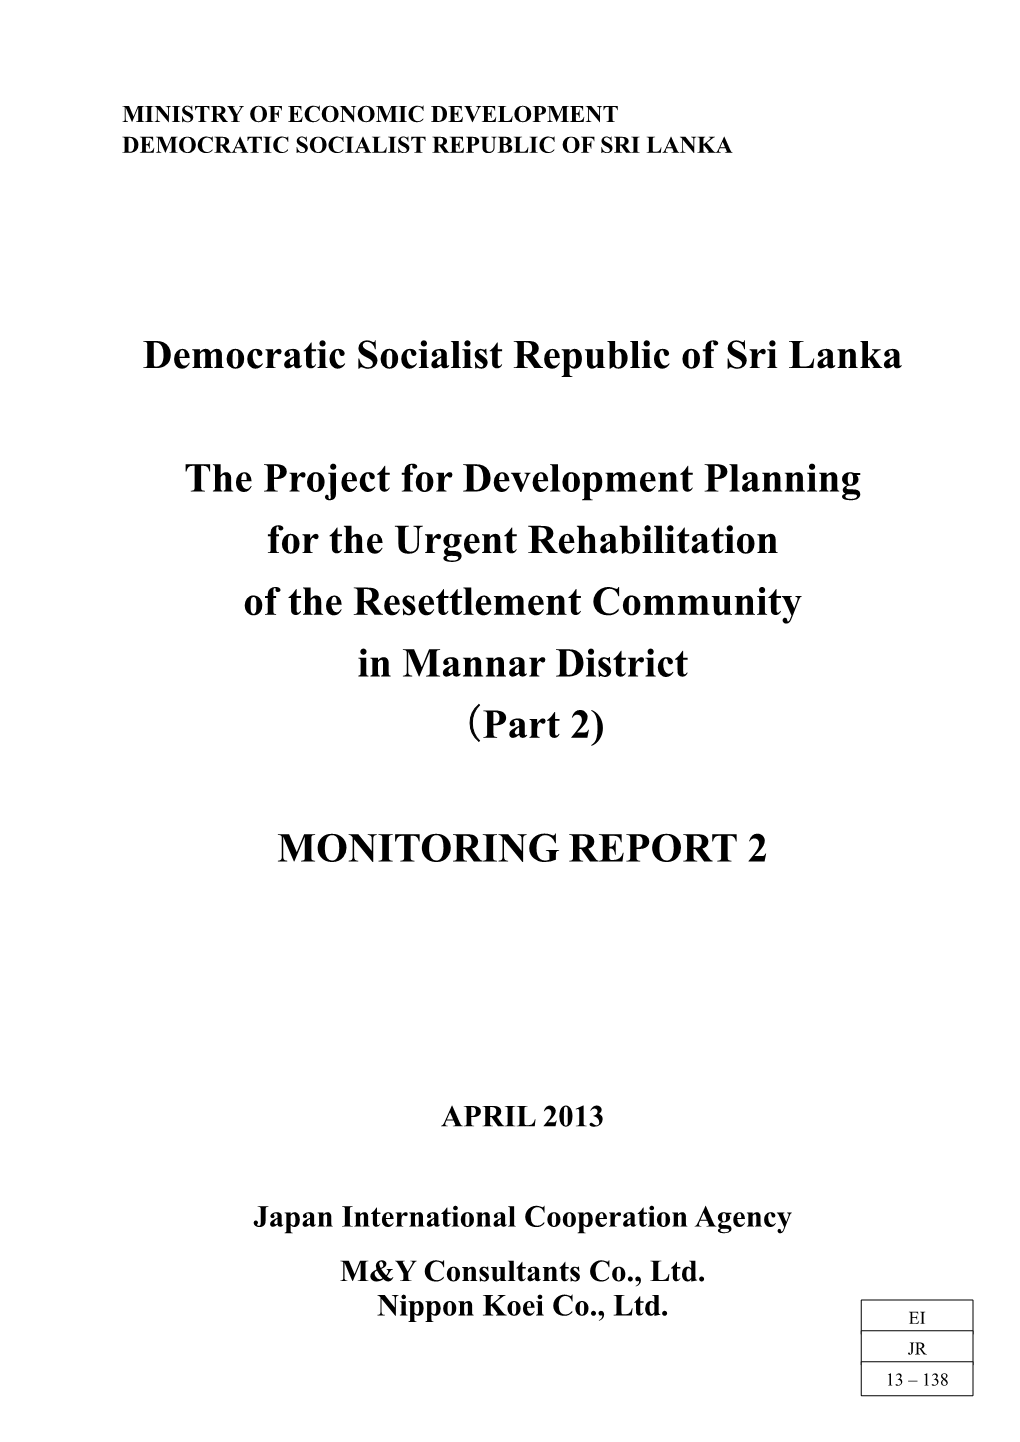 Democratic Socialist Republic of Sri Lanka the Project for Development